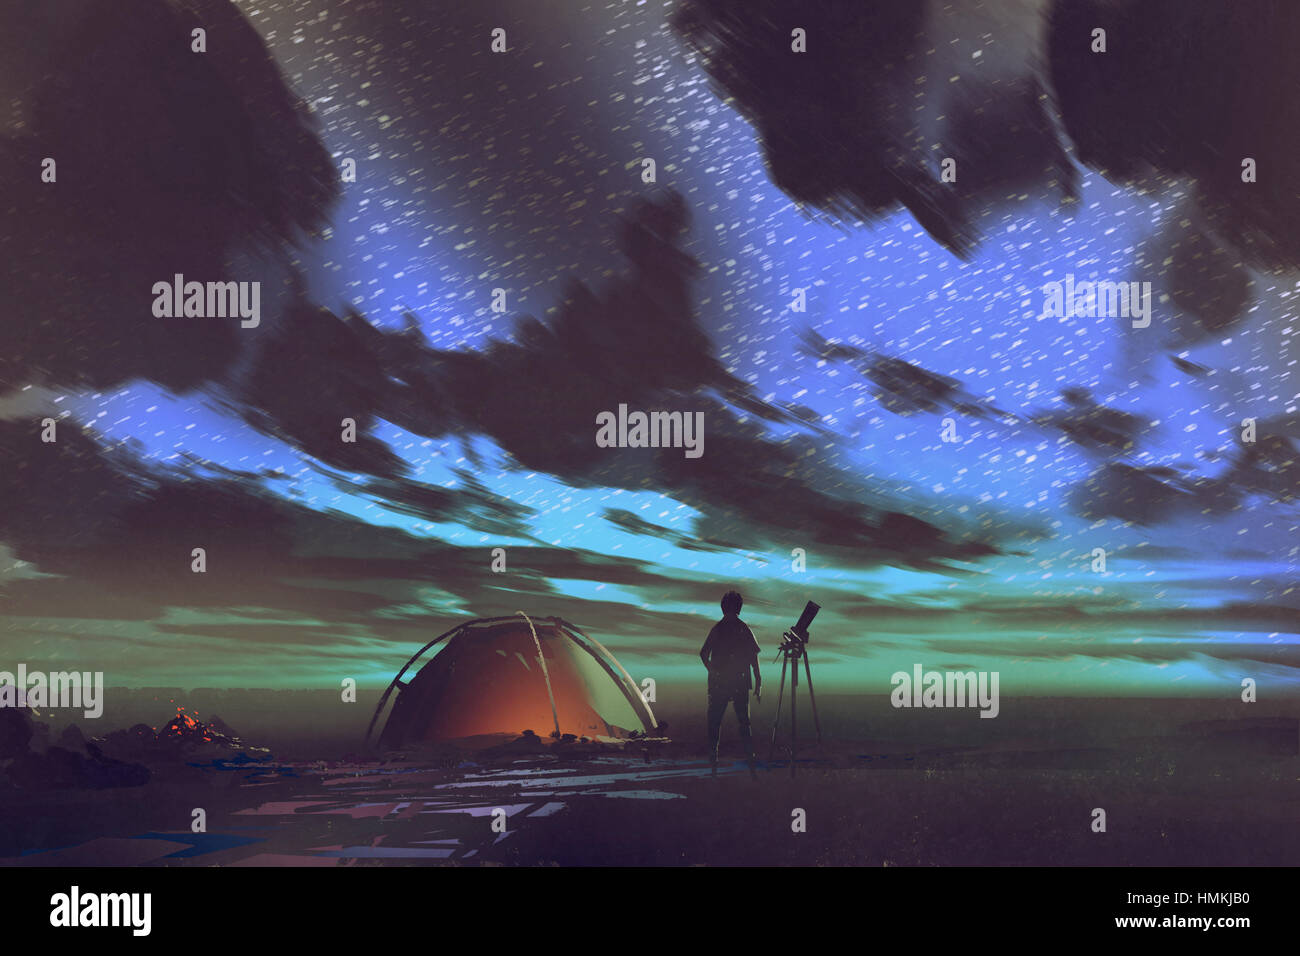 Mann mit Teleskop tatenlos Zelt schaut in den Himmel in der Nacht, Illustration, Malerei Stockfoto